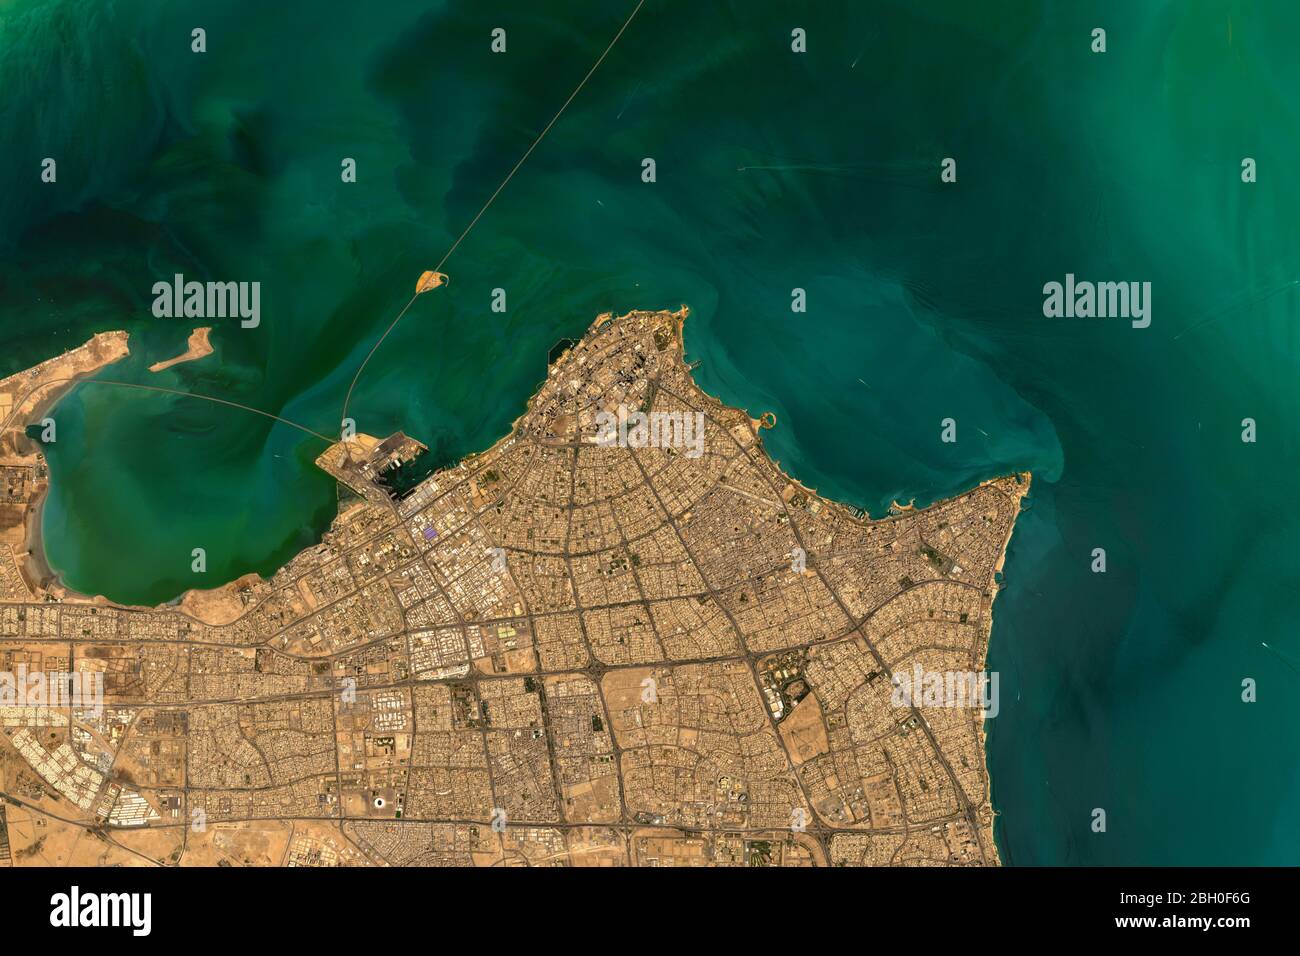 Hochauflösende Satellitenaufnahme von Kuwait-Stadt am Persischen Golf - enthält modifizierte Copernicus-Sentinel-Daten (2020) Stockfoto